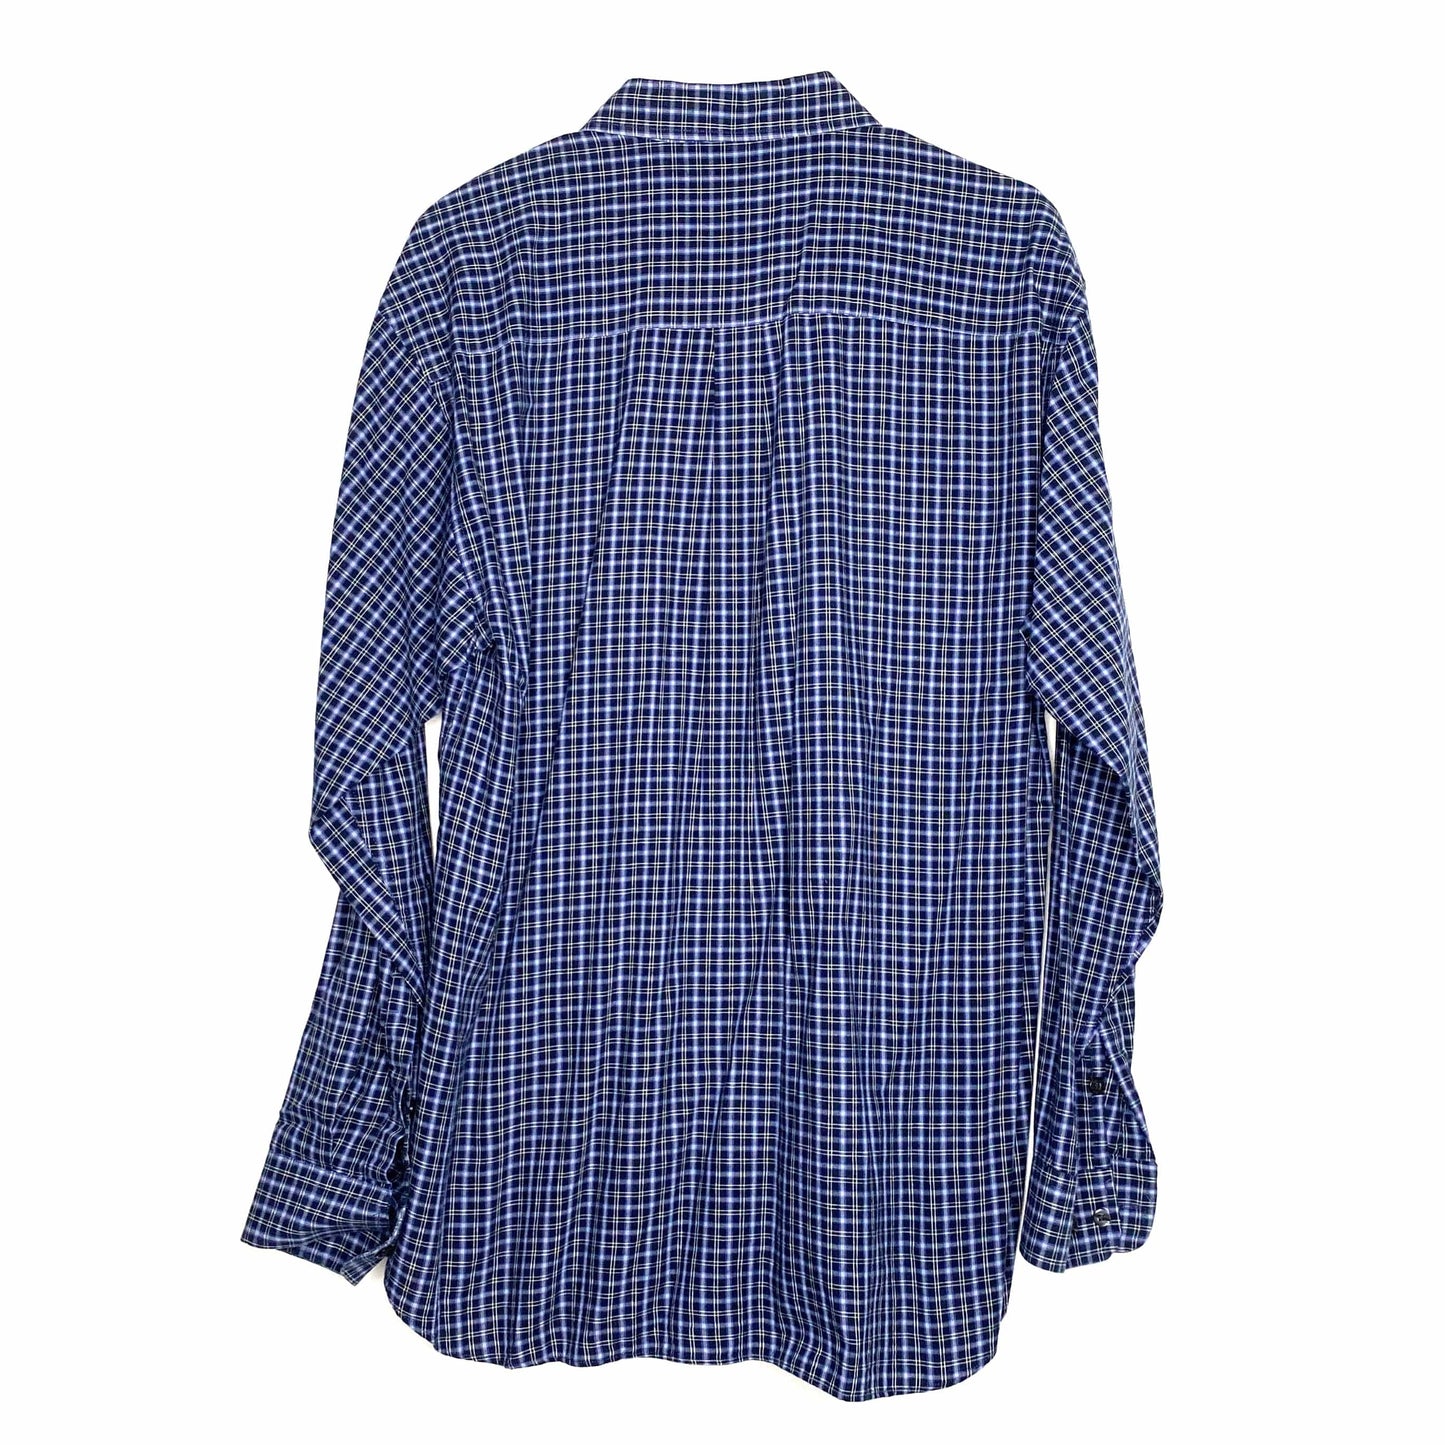 Ralph Lauren Mens Size L Blue White Black Plaid Dress Shirt Button-Up L/s